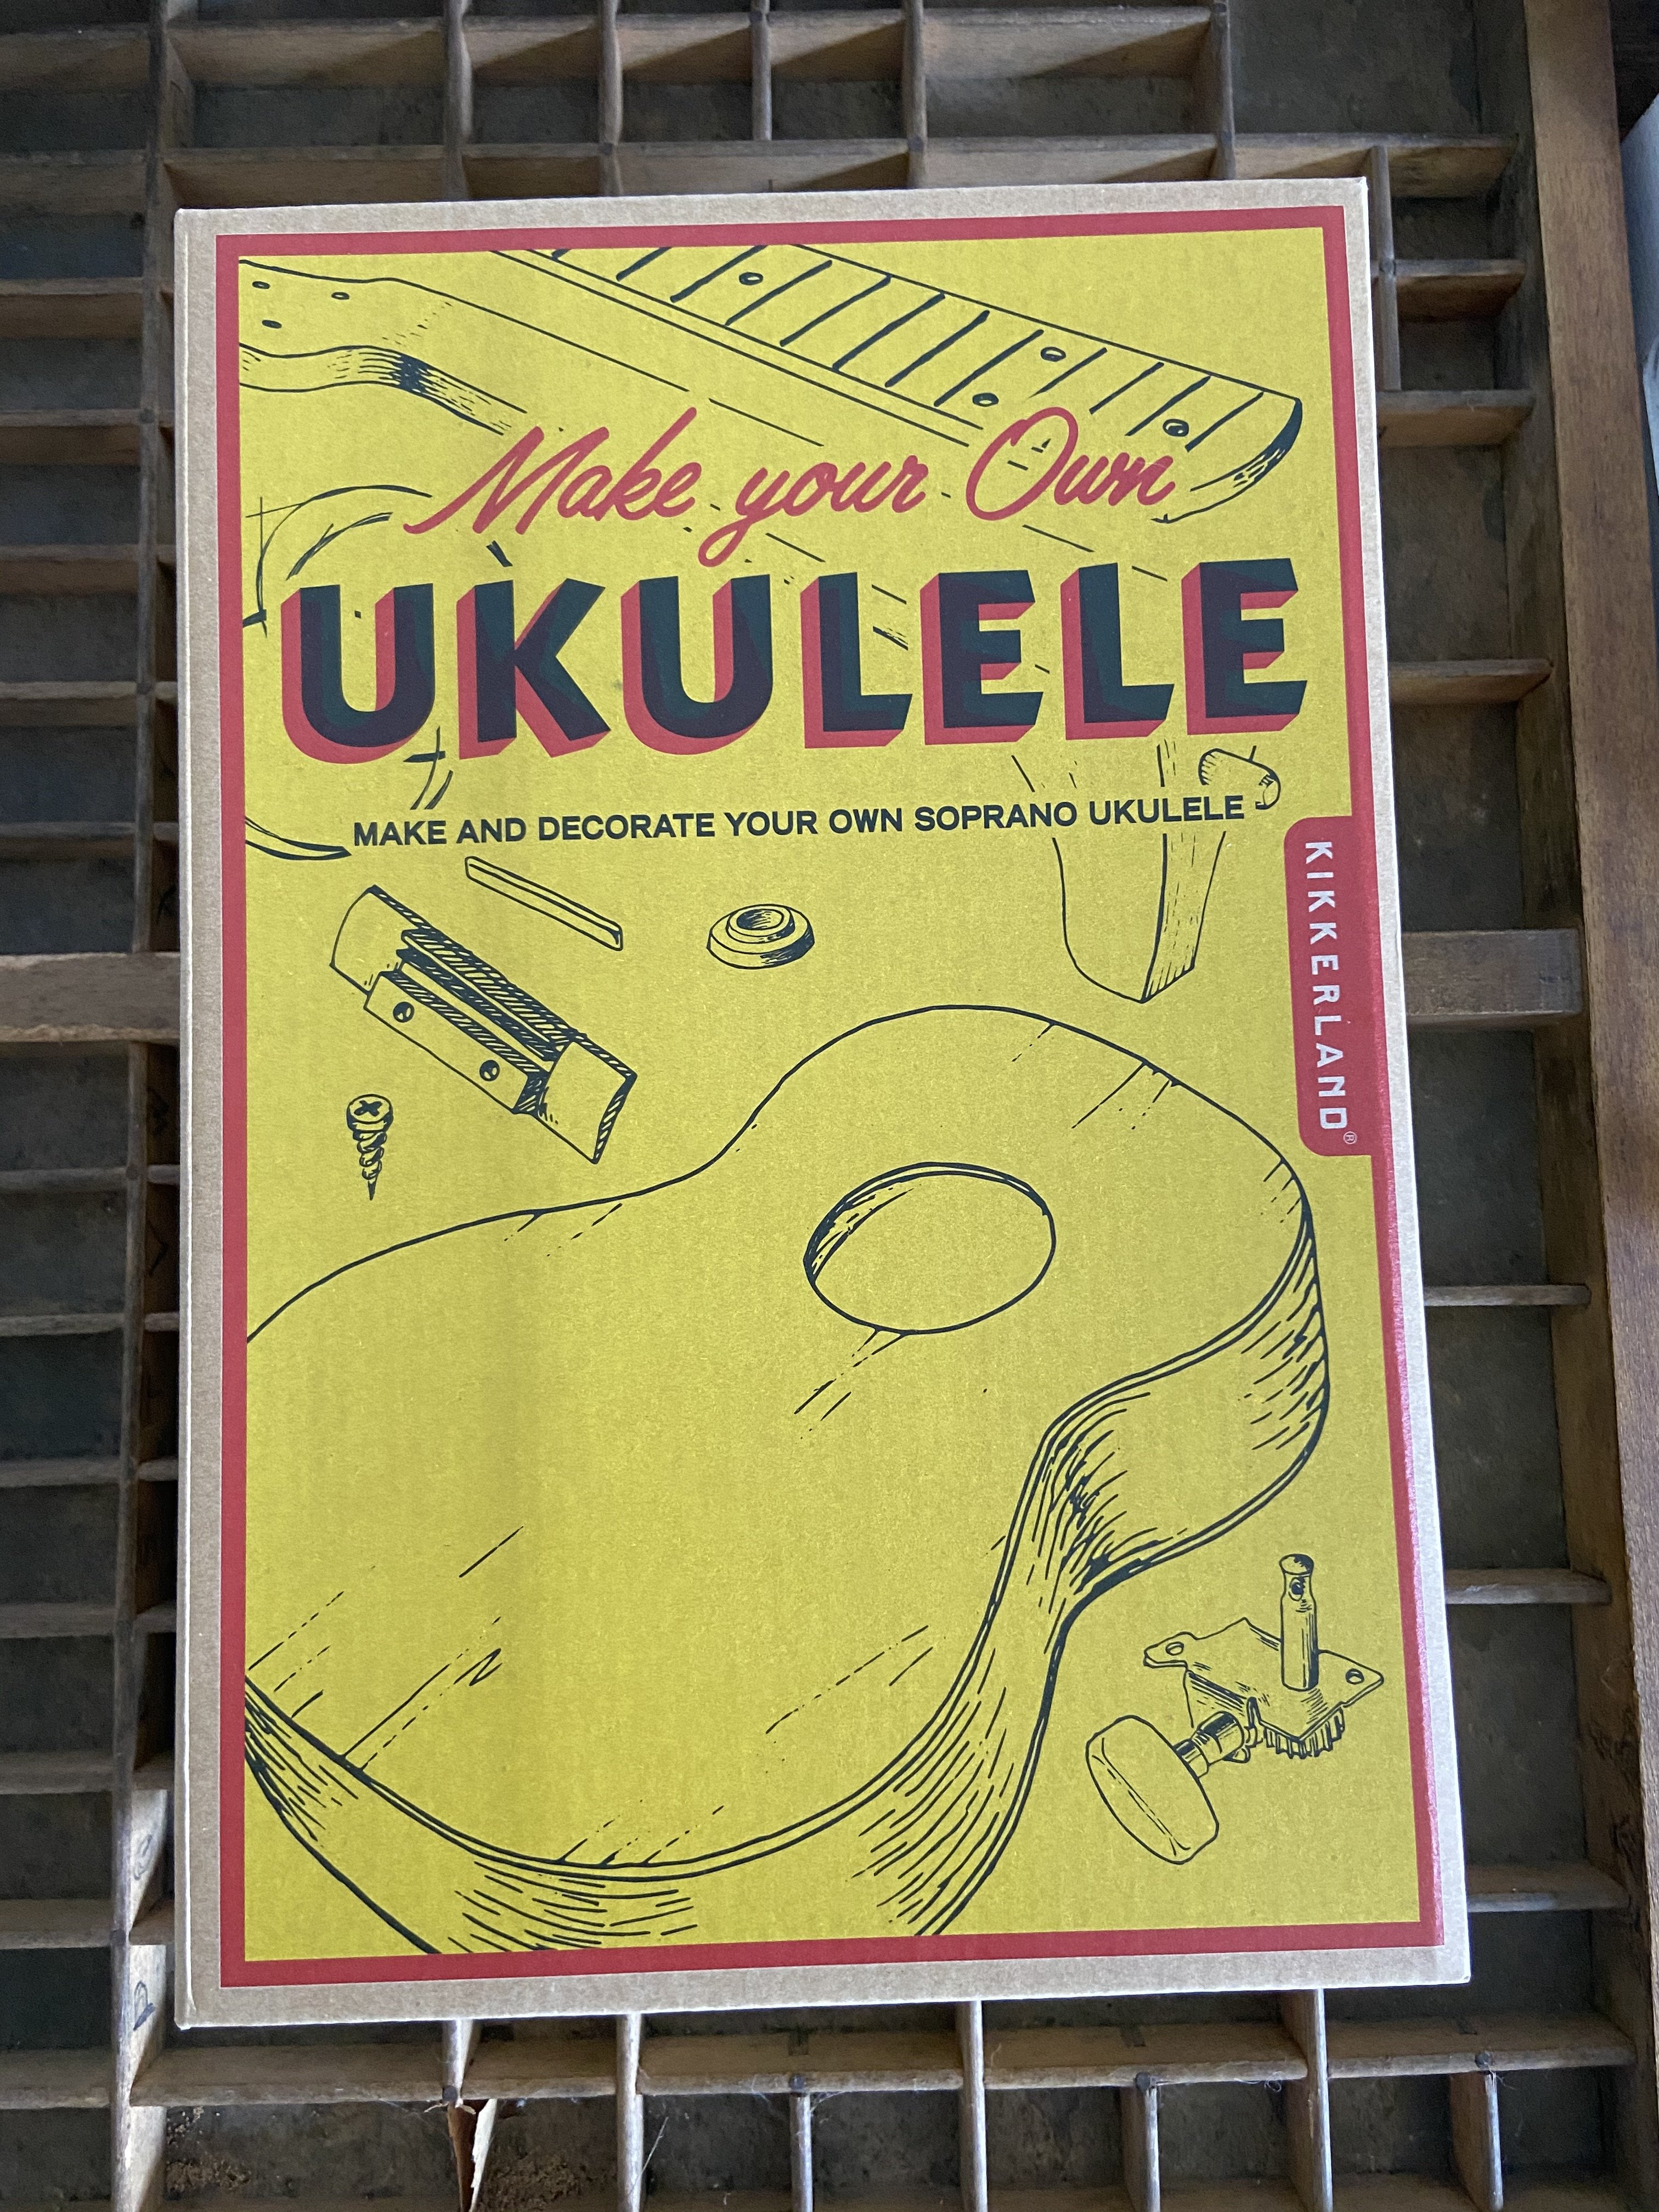 Build Your Own Ukulele! Ukulele Bradley & Lily 